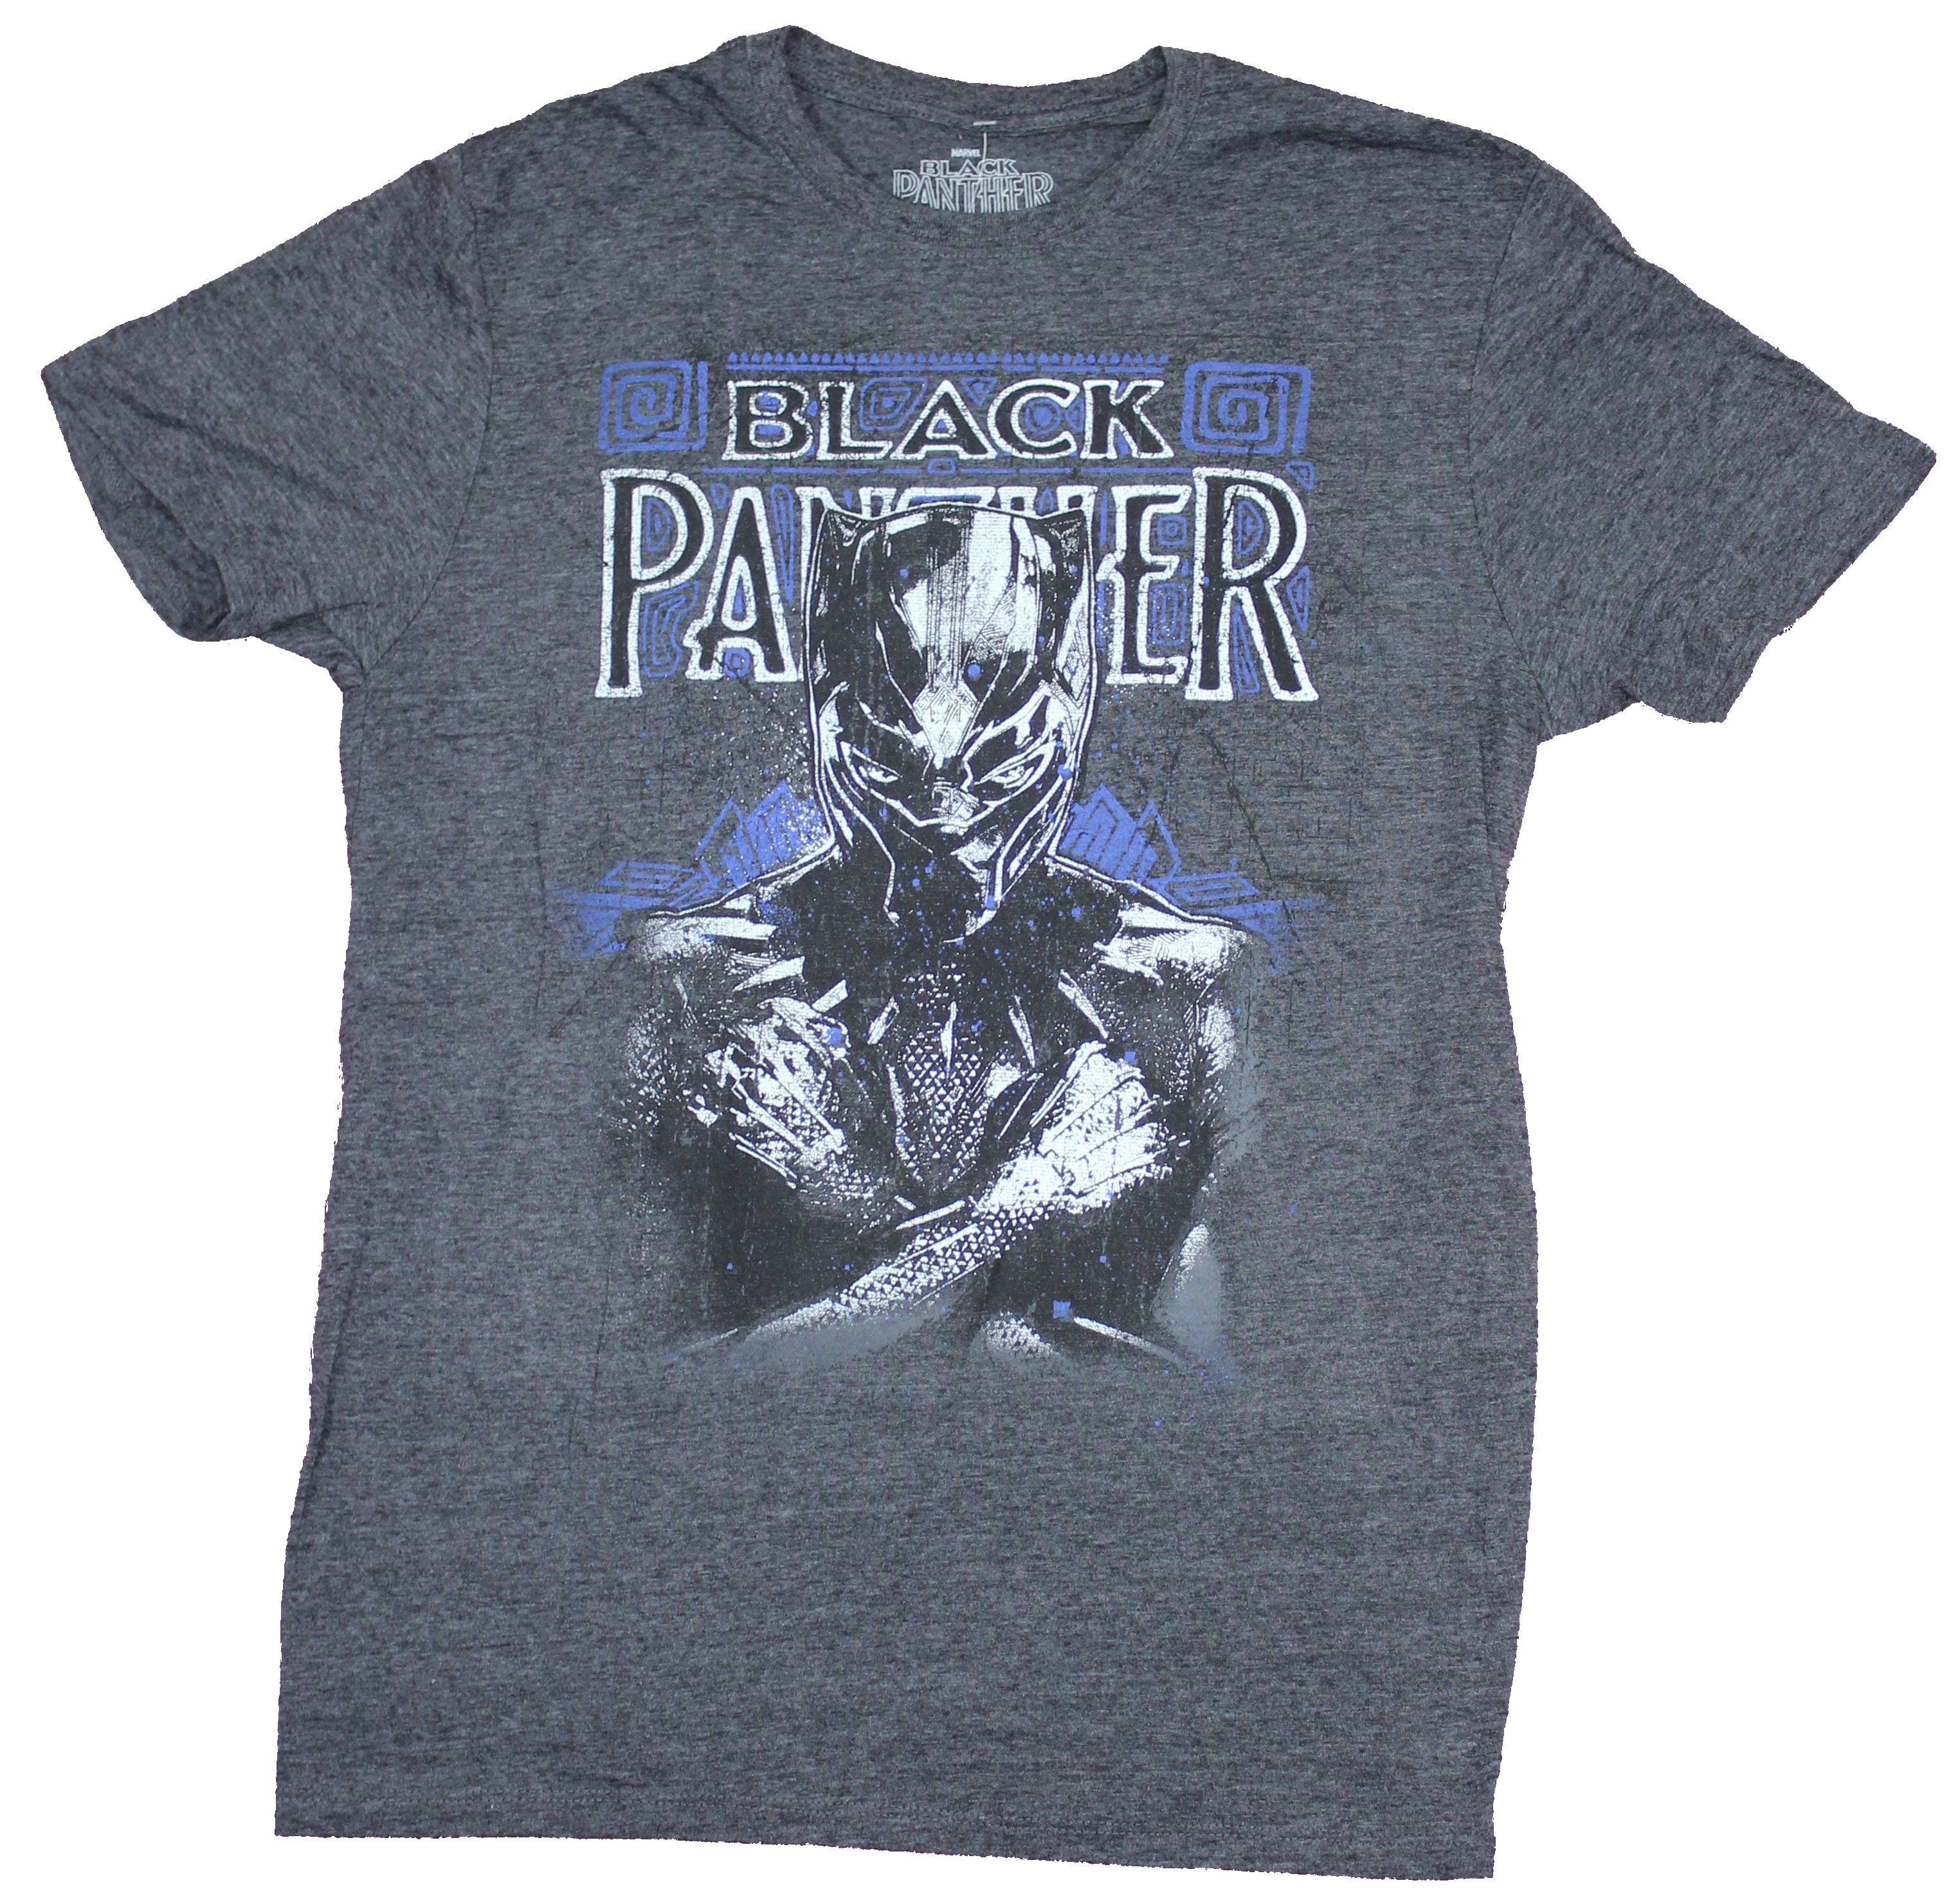 Black Panther Men's Black TShirt Tees Clothing